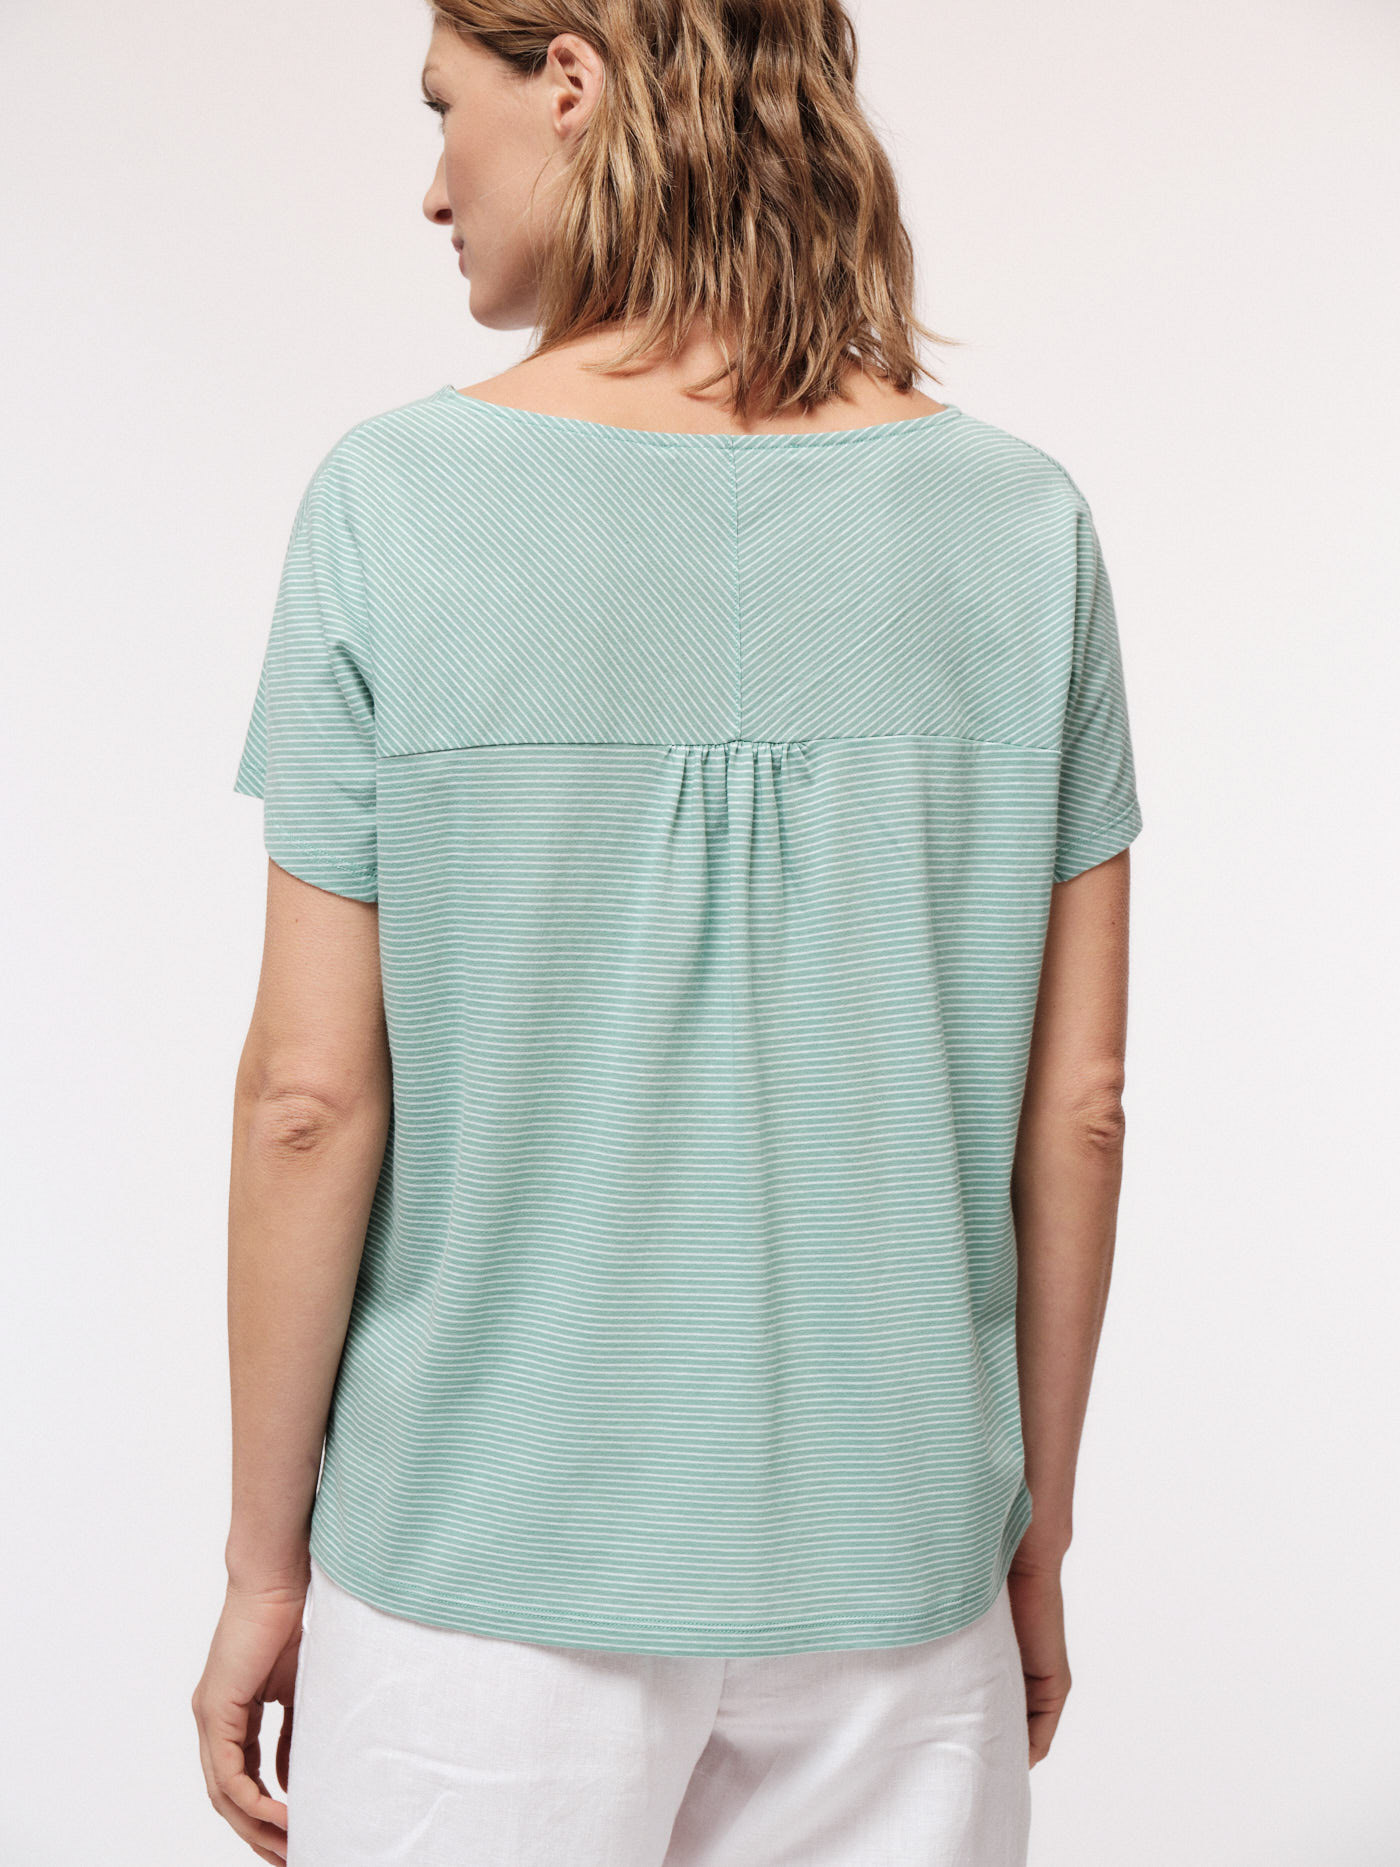 Kurzarm-Shirt mit Streifen mineral green/off white